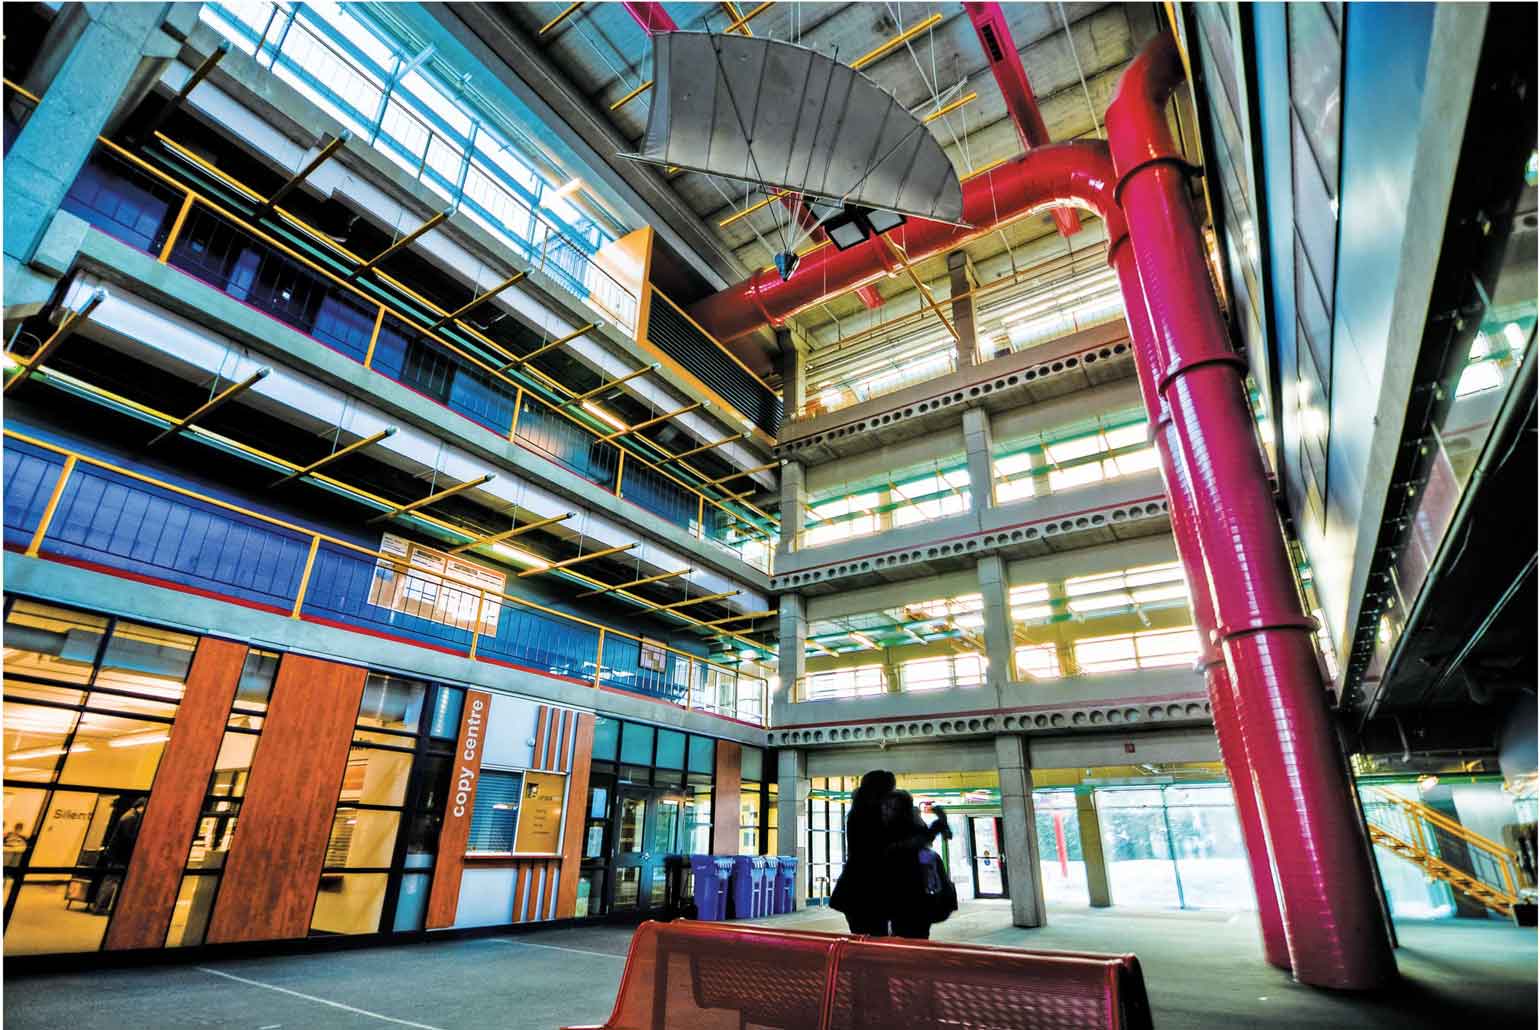 ウォータールー大学でエンジニアリングを勉強する学生が使う建物